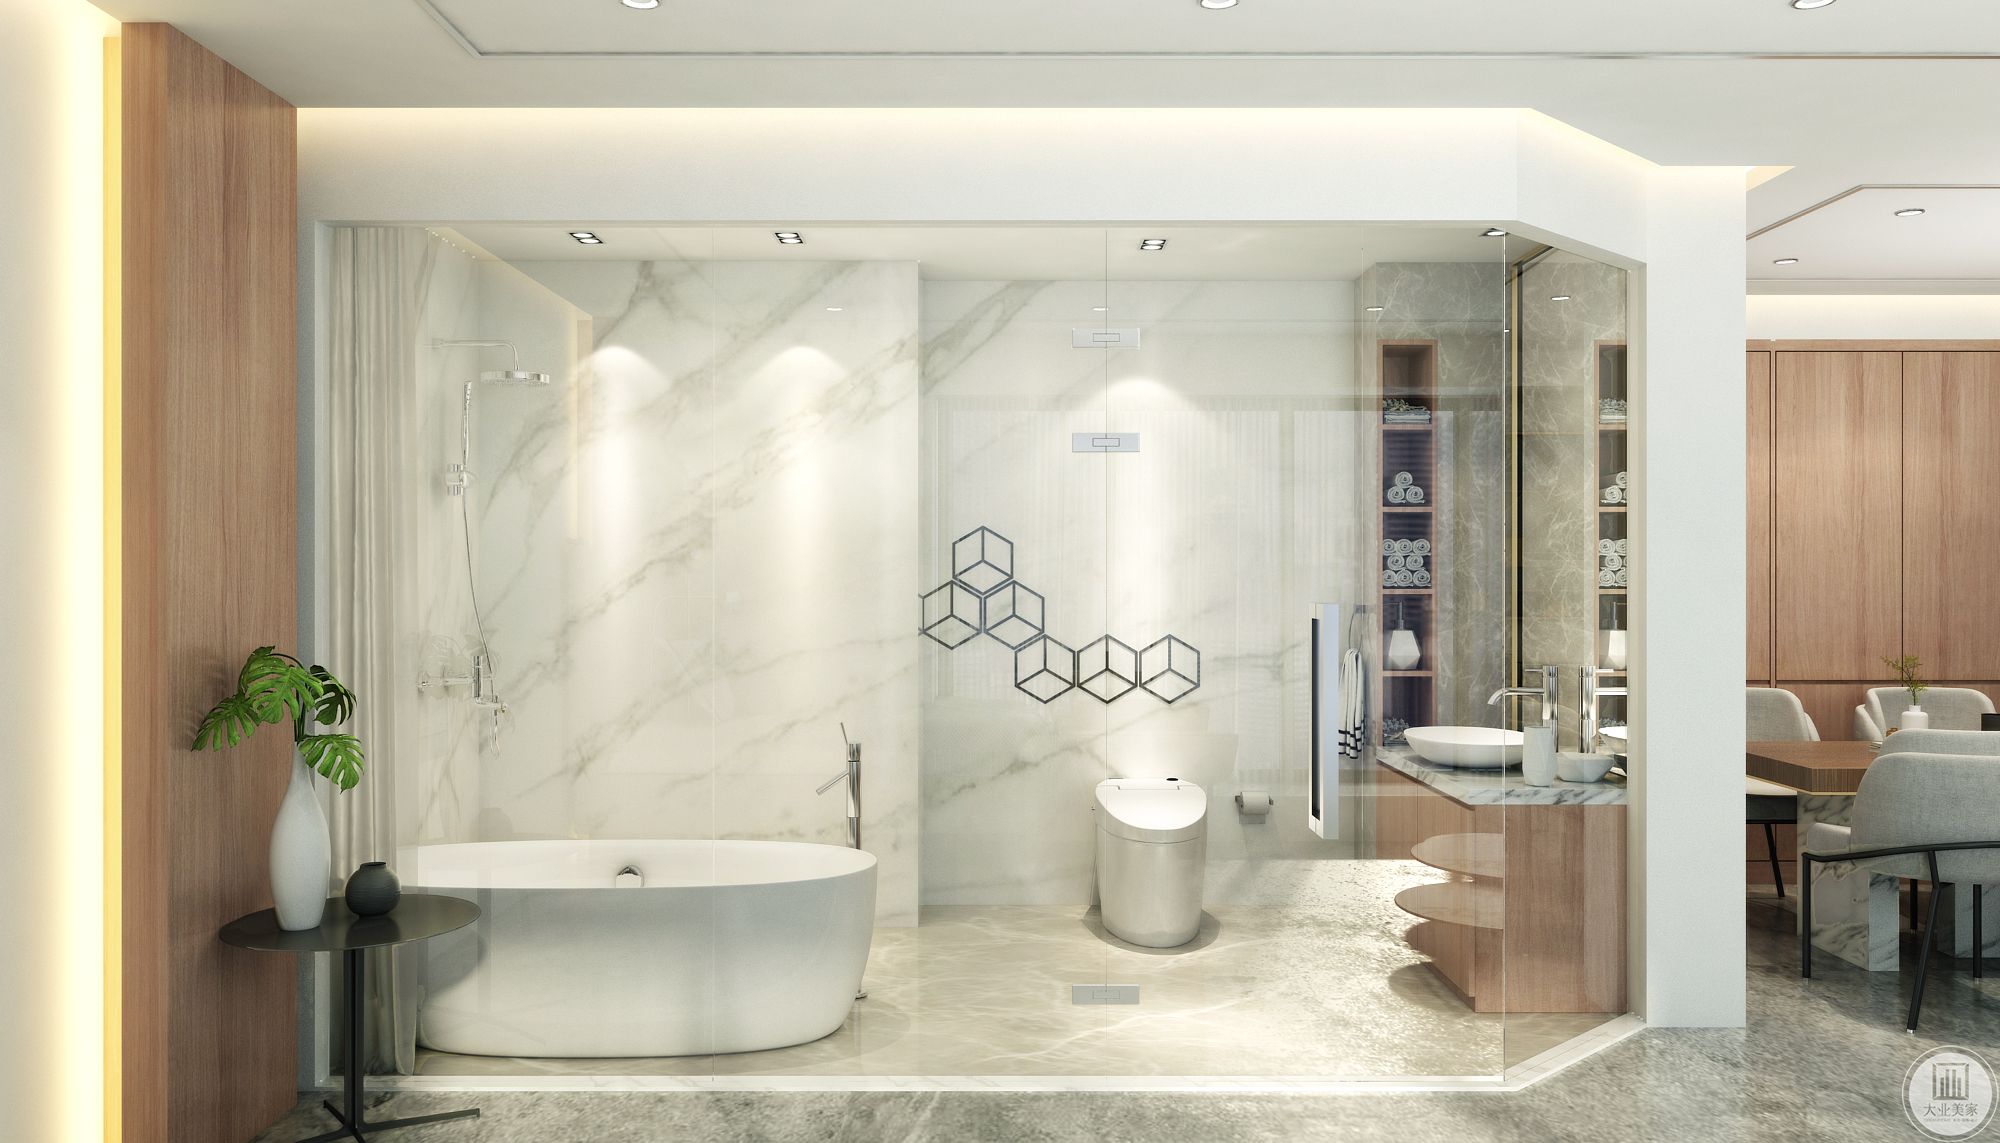 透明的玻璃让空间有交流性。白色大理石墙面与厨房墙面相互呼应。造型简洁的浴缸与马桶，几何形的装饰使卫生间更具现代感。洗手台旁的壁龛既美观又能增加储物。